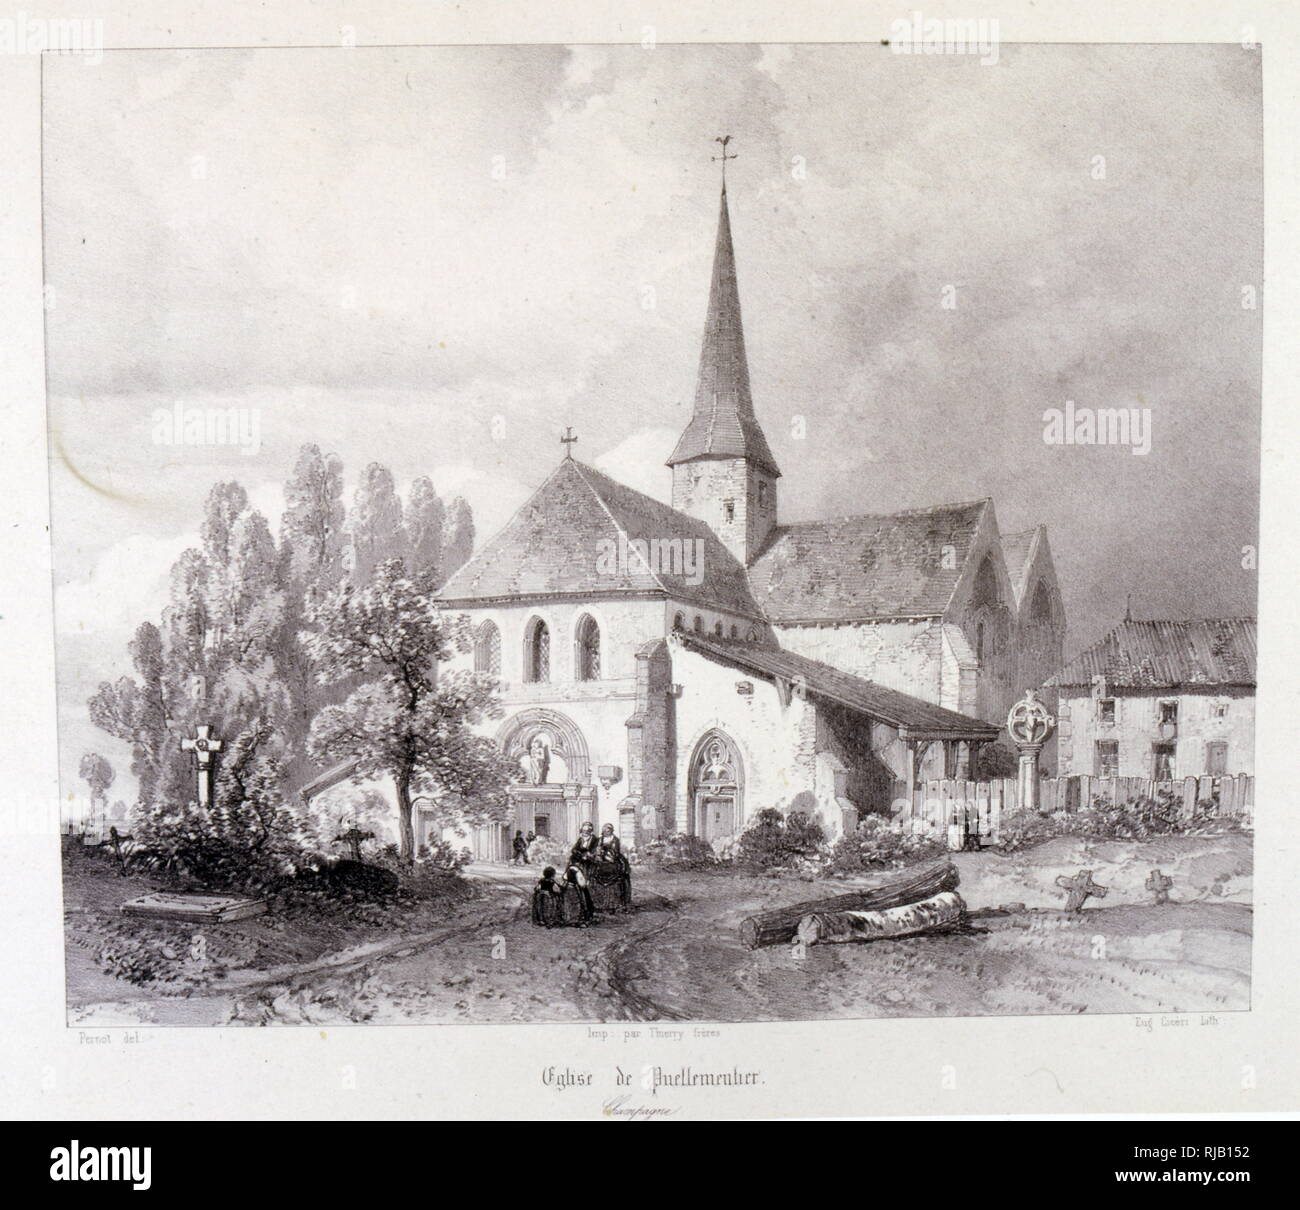 Eglise Notre-Dame-en-sa-Nativite, Puellemontier, France,1857, dessin par le Baron Isidore Taylor (1789 - 1879), voyageur et auteur français. Banque D'Images